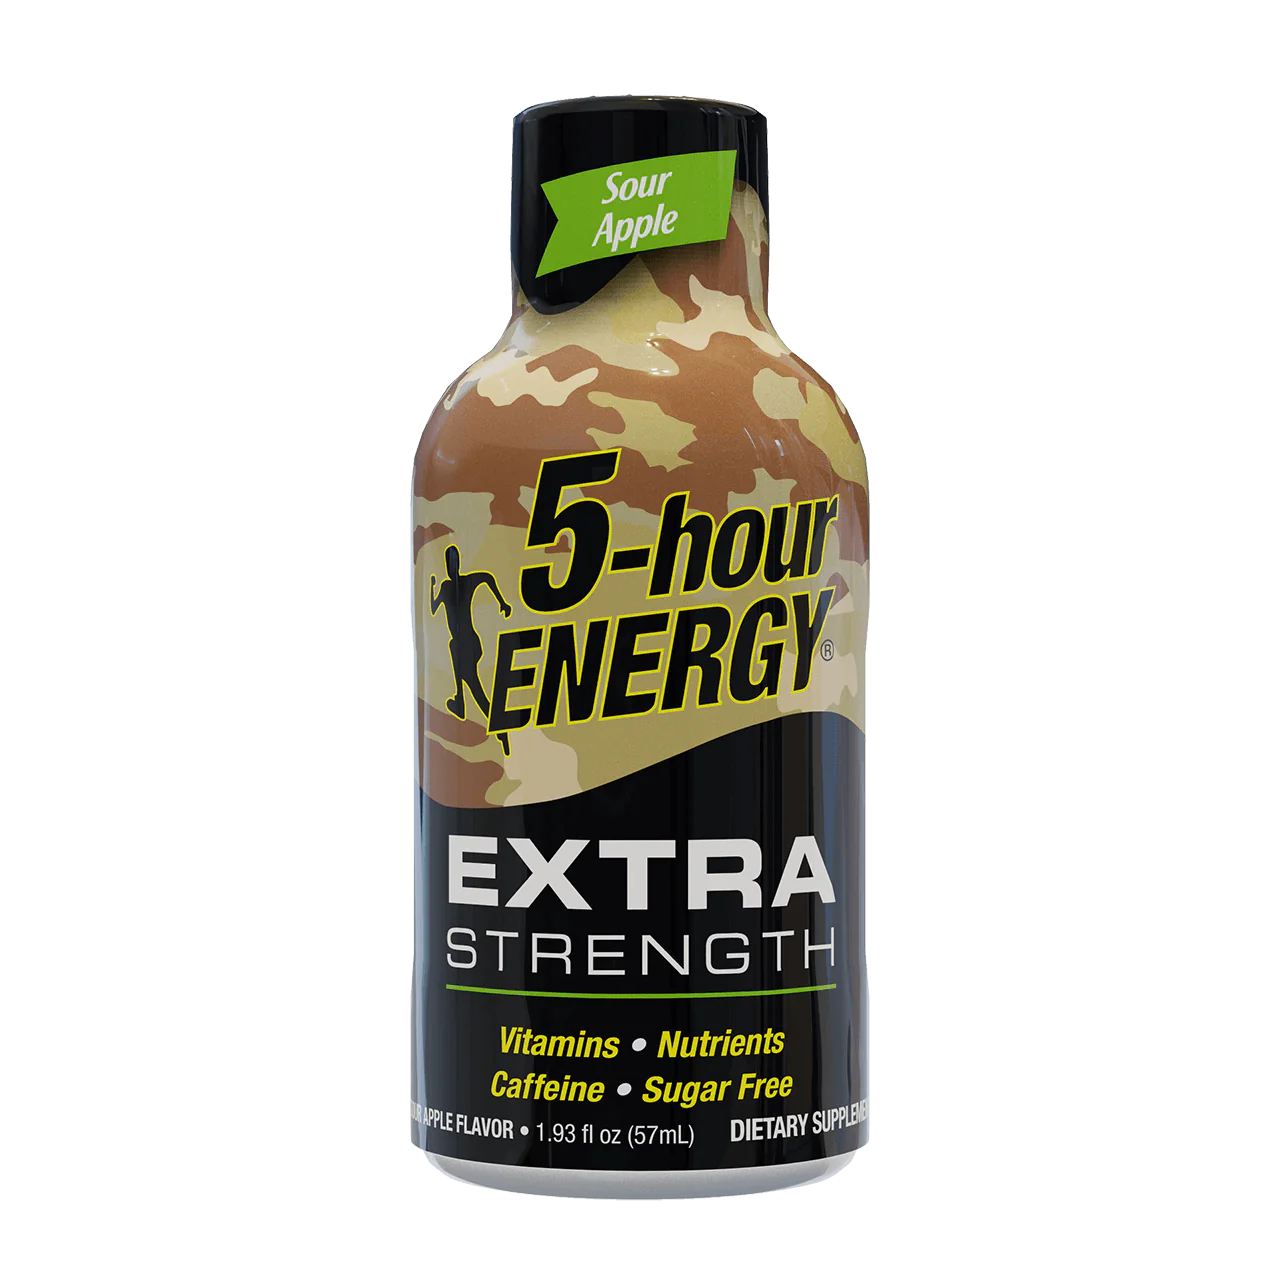 5-hour Energy Extra Strength Sour Apple 1.93oz